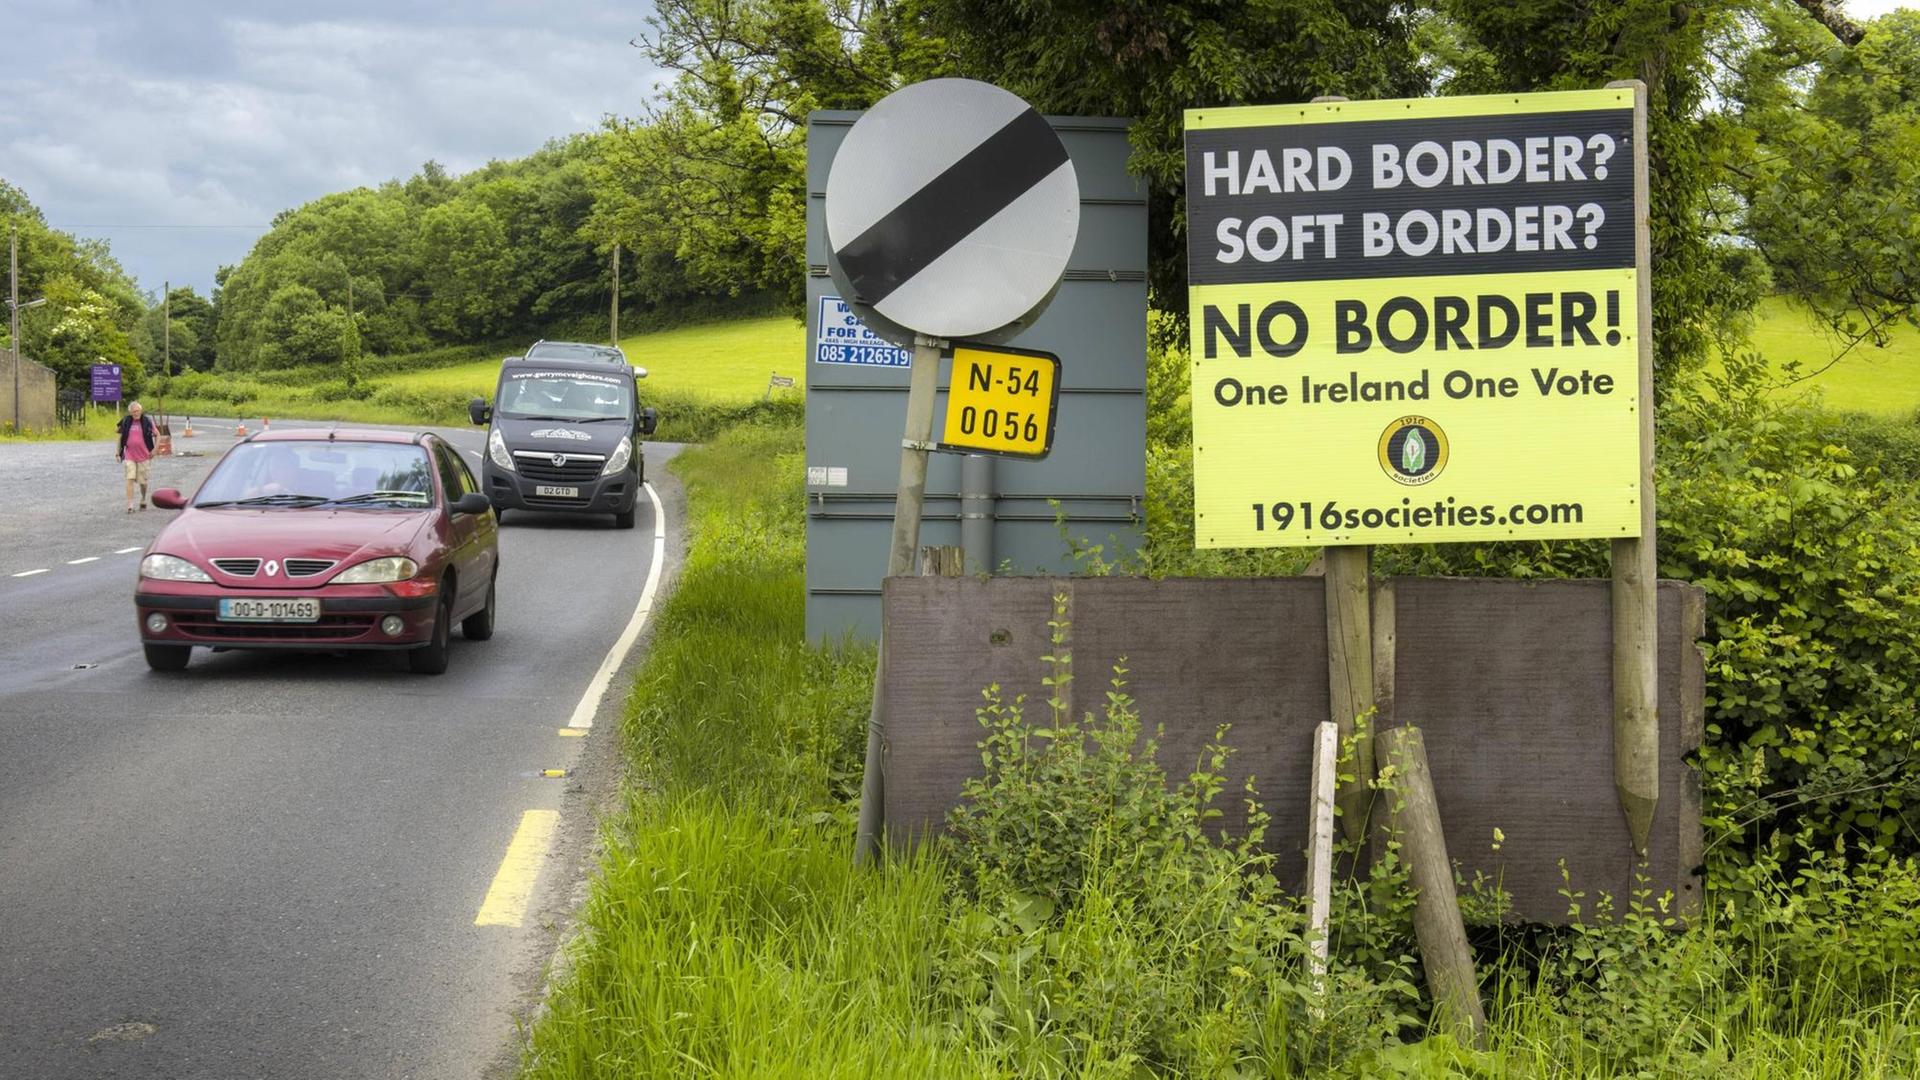 Innereuropäische Grenze zwischen der Republik Irland und Nordirland, die nach den Brexit-Verhandlungen zwischen der EU und Großbritannien zu einer harten Grenze werden könnte, Blacklion, County Cavan, Irland, Europa